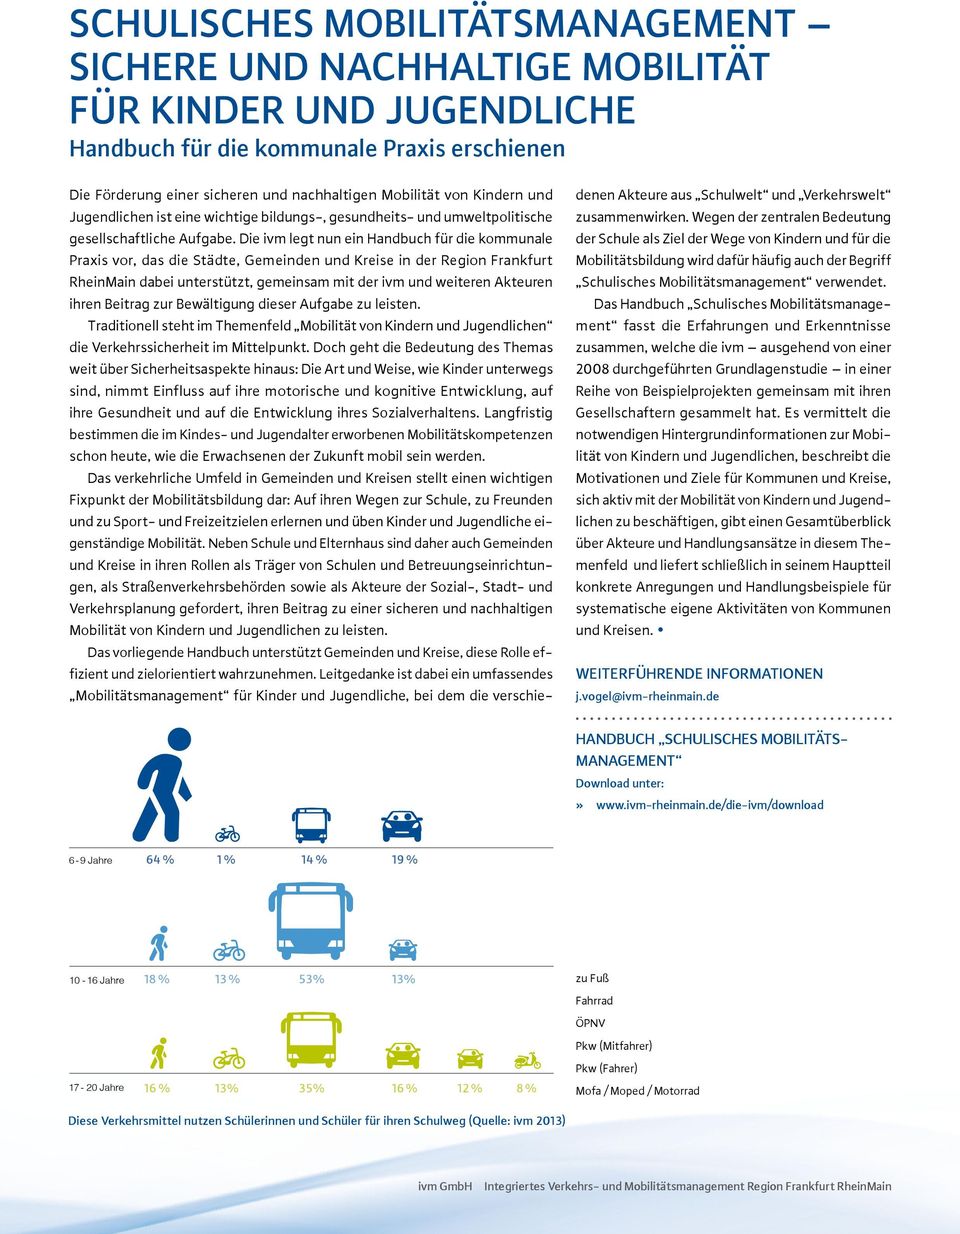 Das Handbuch Schulisches Mobilitätsmanagement fasst die Erfahrungen und Erkenntnisse zusammen, welche die ivm ausgehend von einer 2008 durchgeführten Grundlagenstudie in einer Reihe von